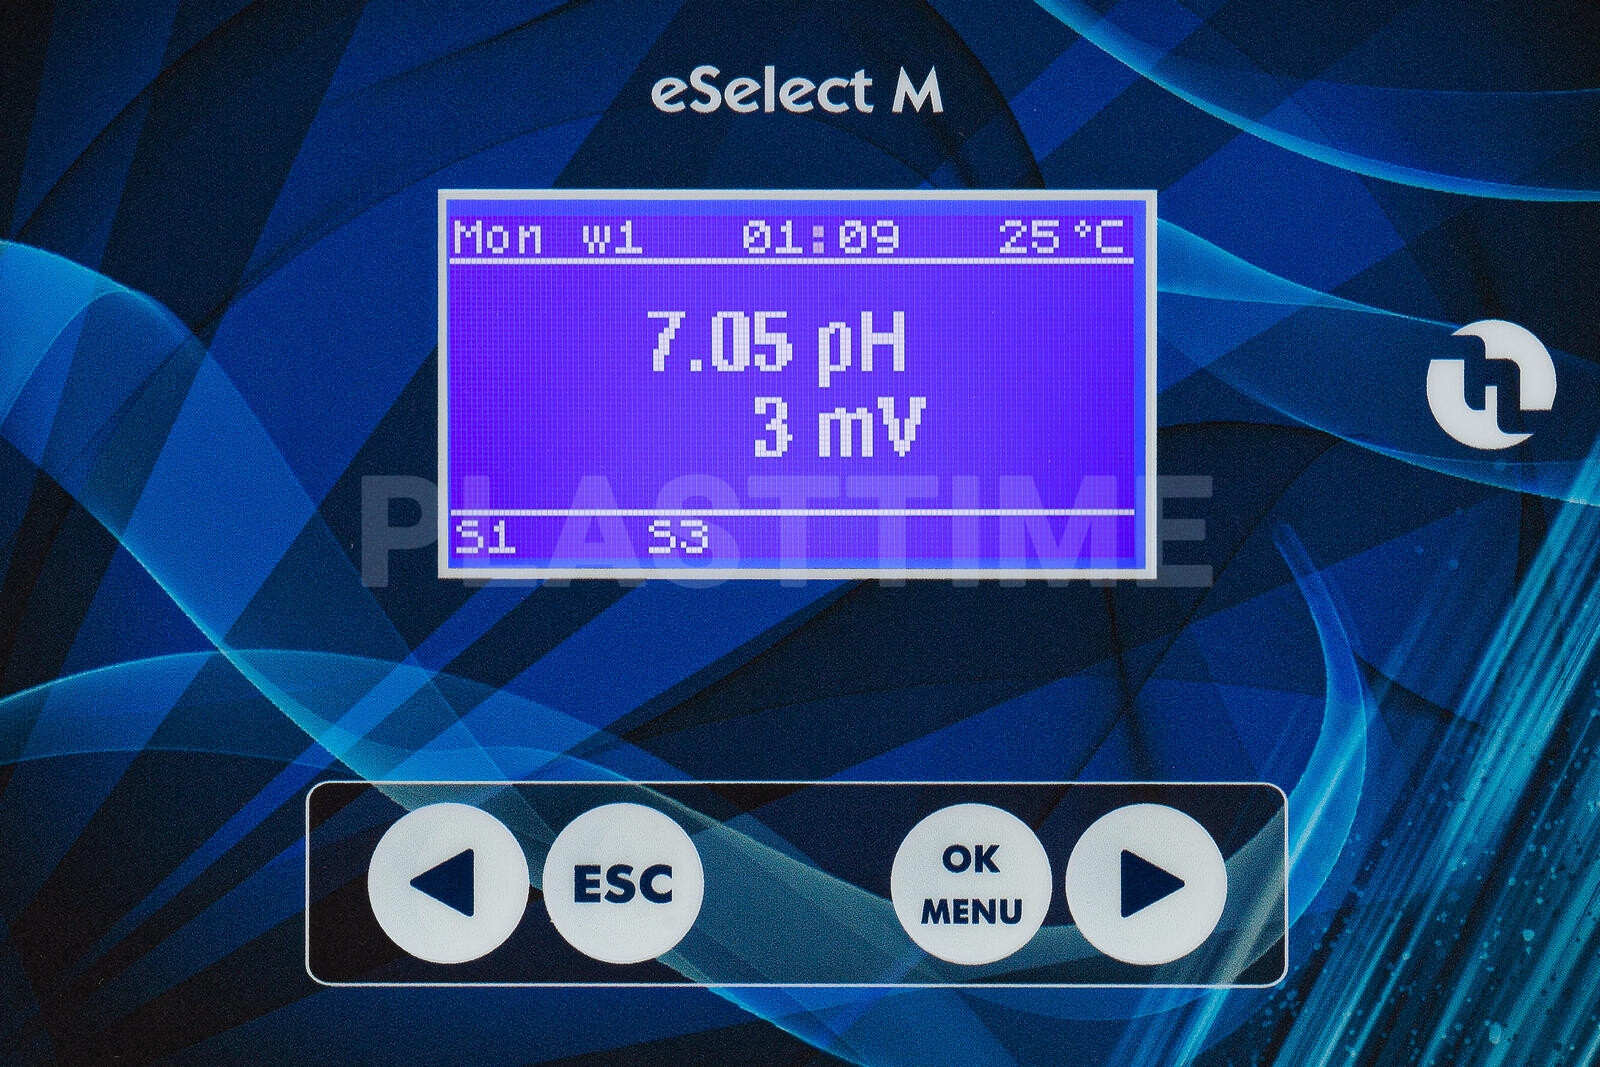 Анализатор жидкости eSELECT-M 2 PH-RX 100-240V